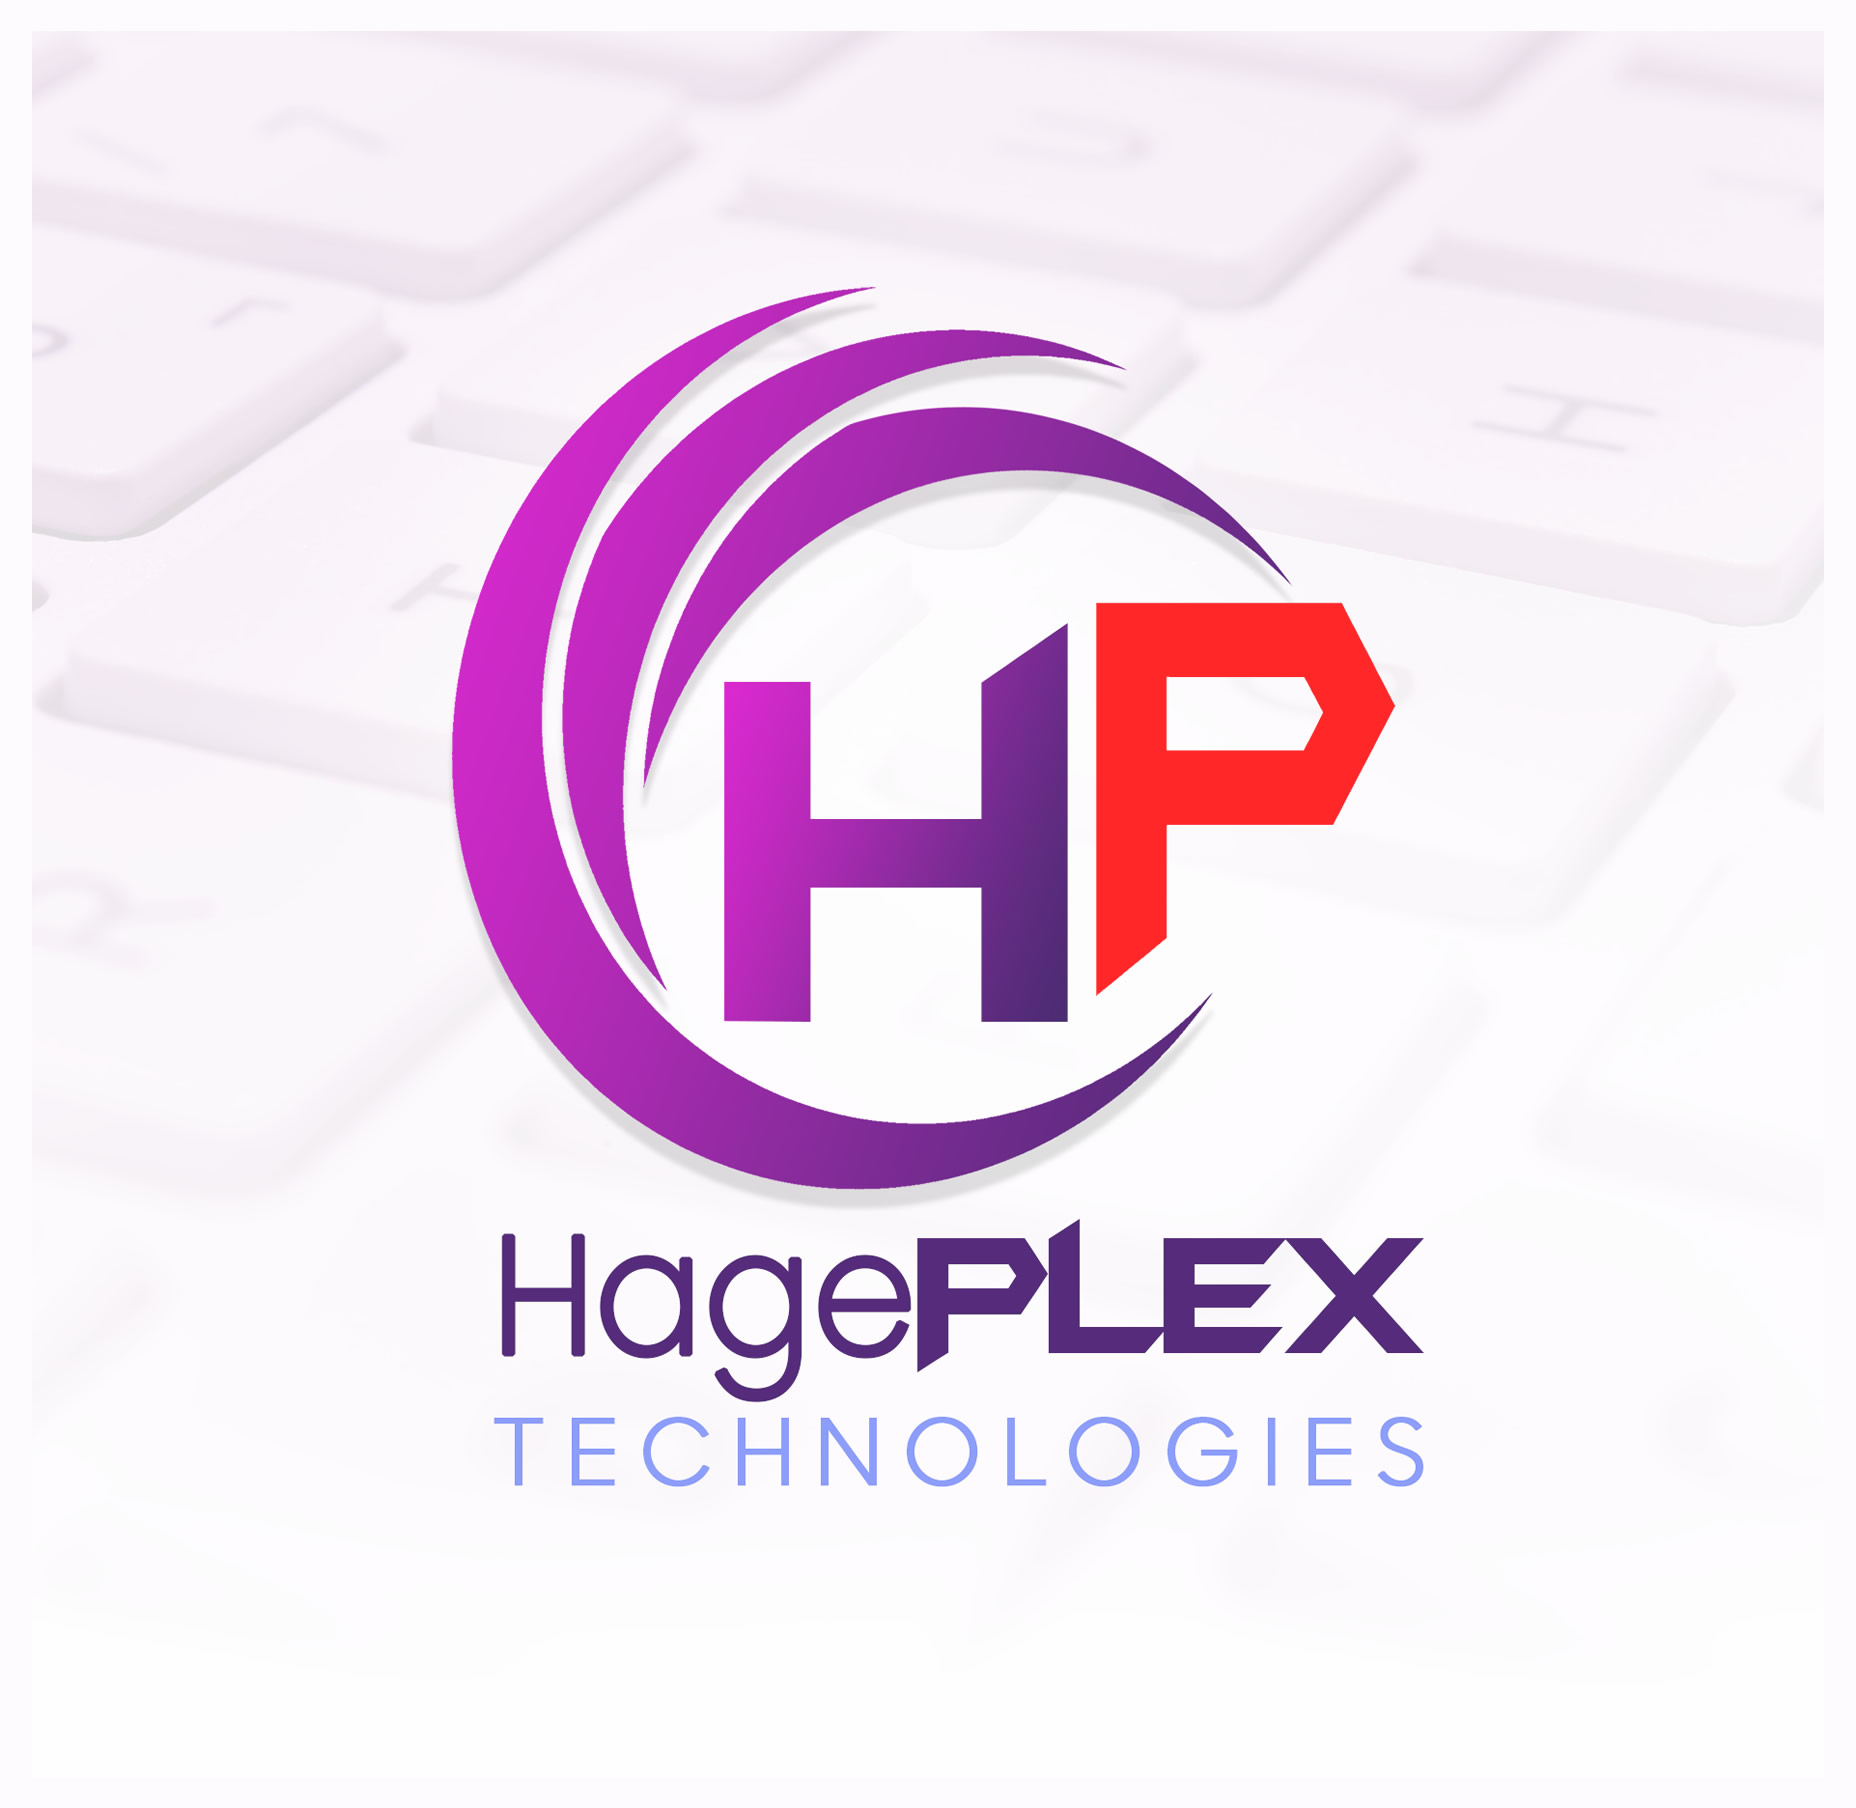 About Hageplex